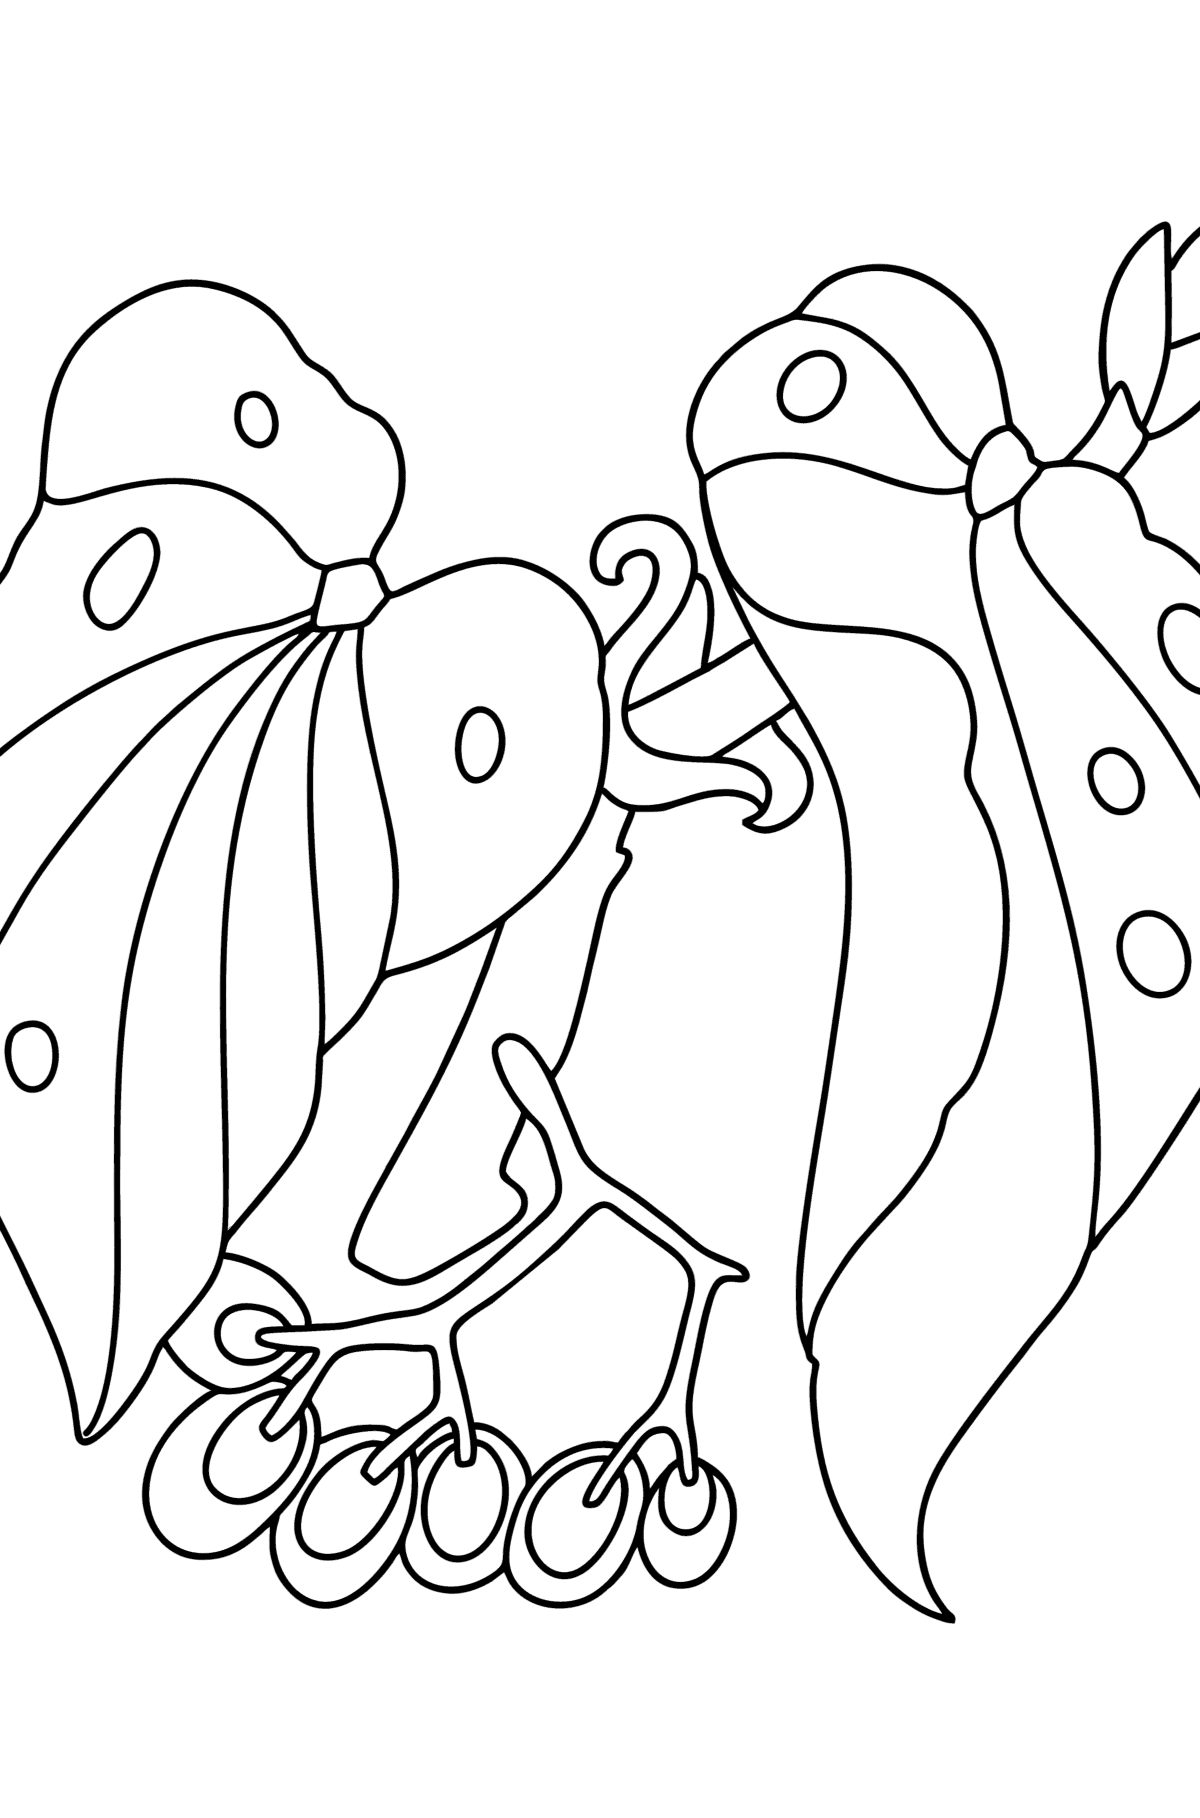 Tegning til fargelegging Begonia - Tegninger til fargelegging for barn